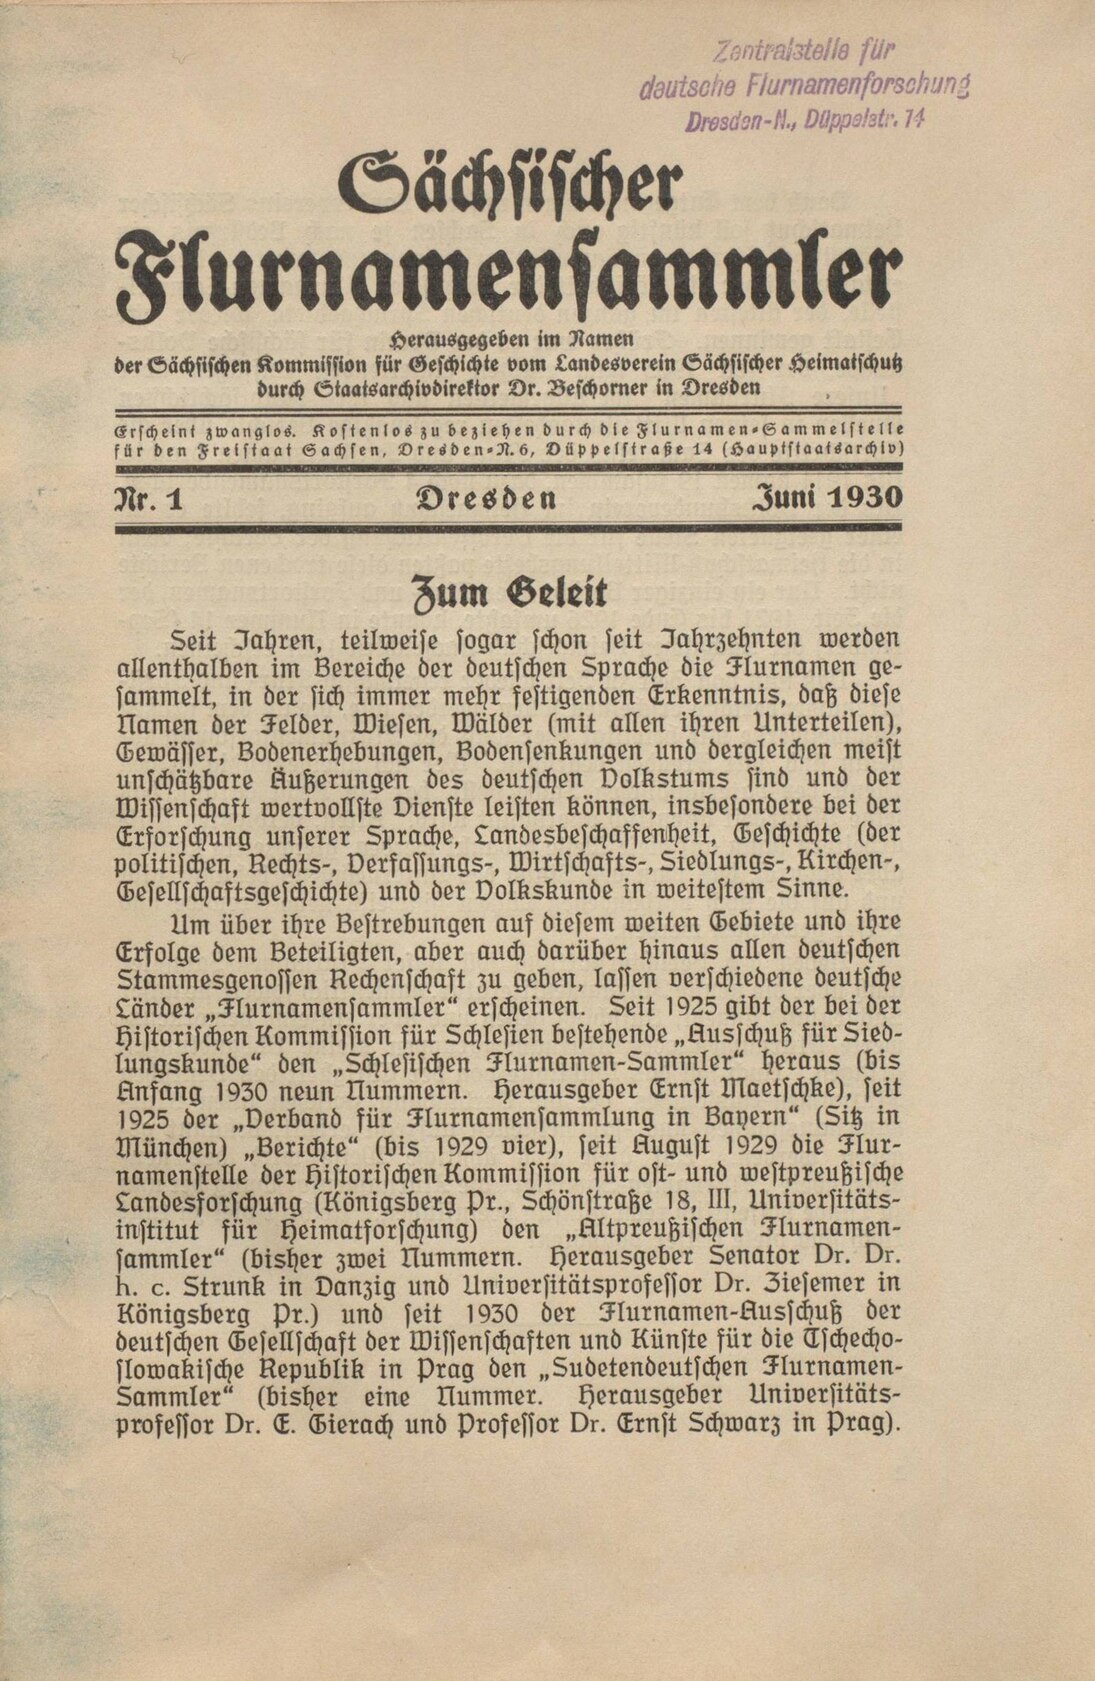 Erste Ausgabe der Zeitschrift „Sächsischer Flurnamensammler“, 1930